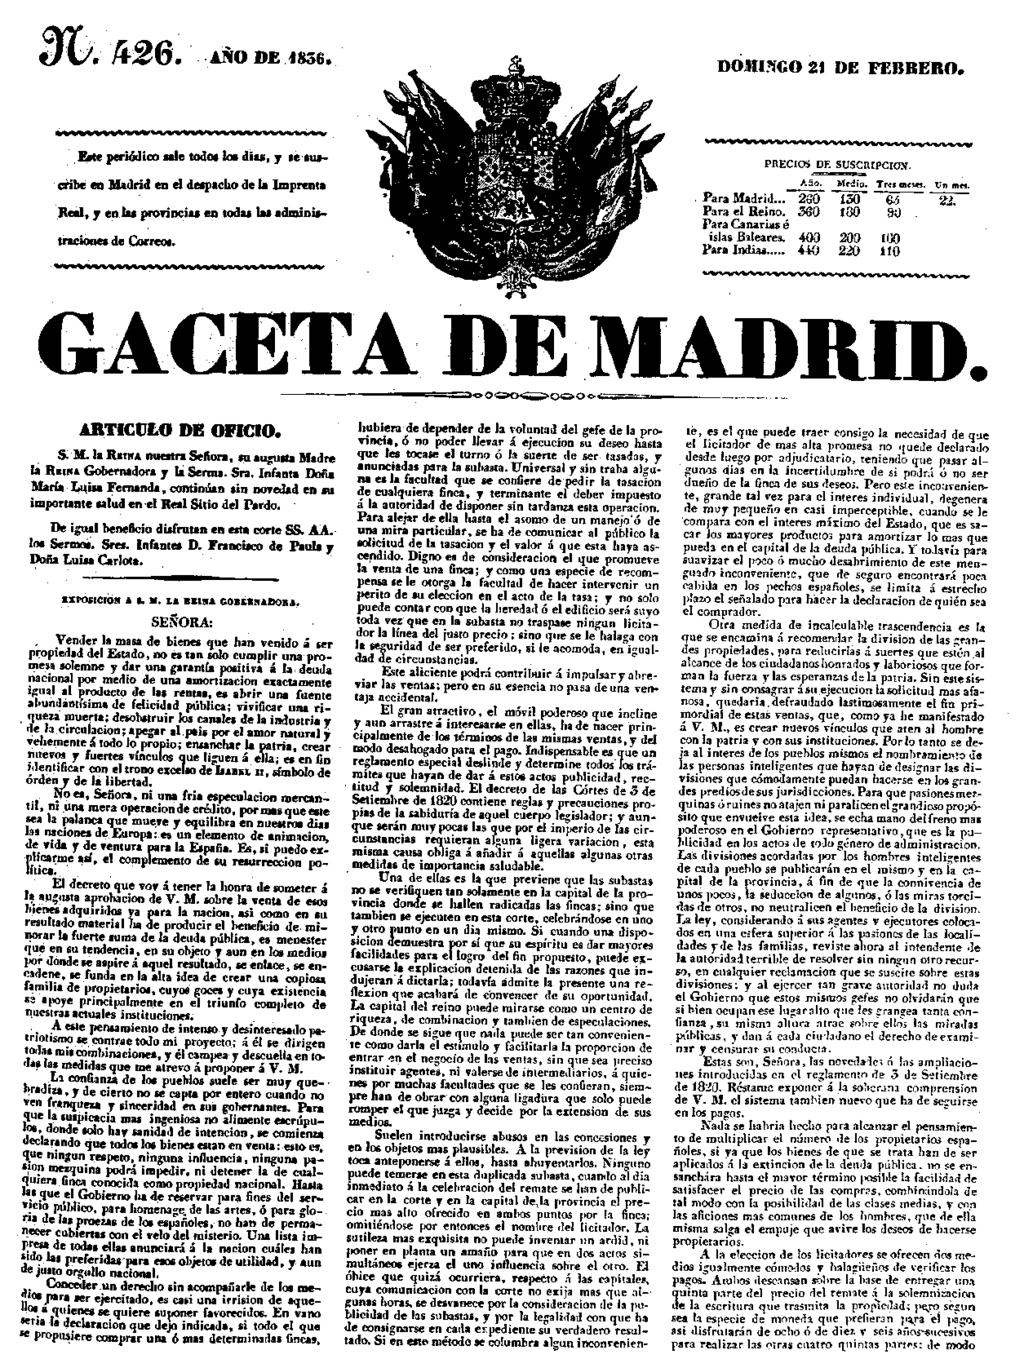 176 Prontuario metodolóxico para o estudo da desamortización na comarca estradense Exemplar da Gazeta de Madrid do 21